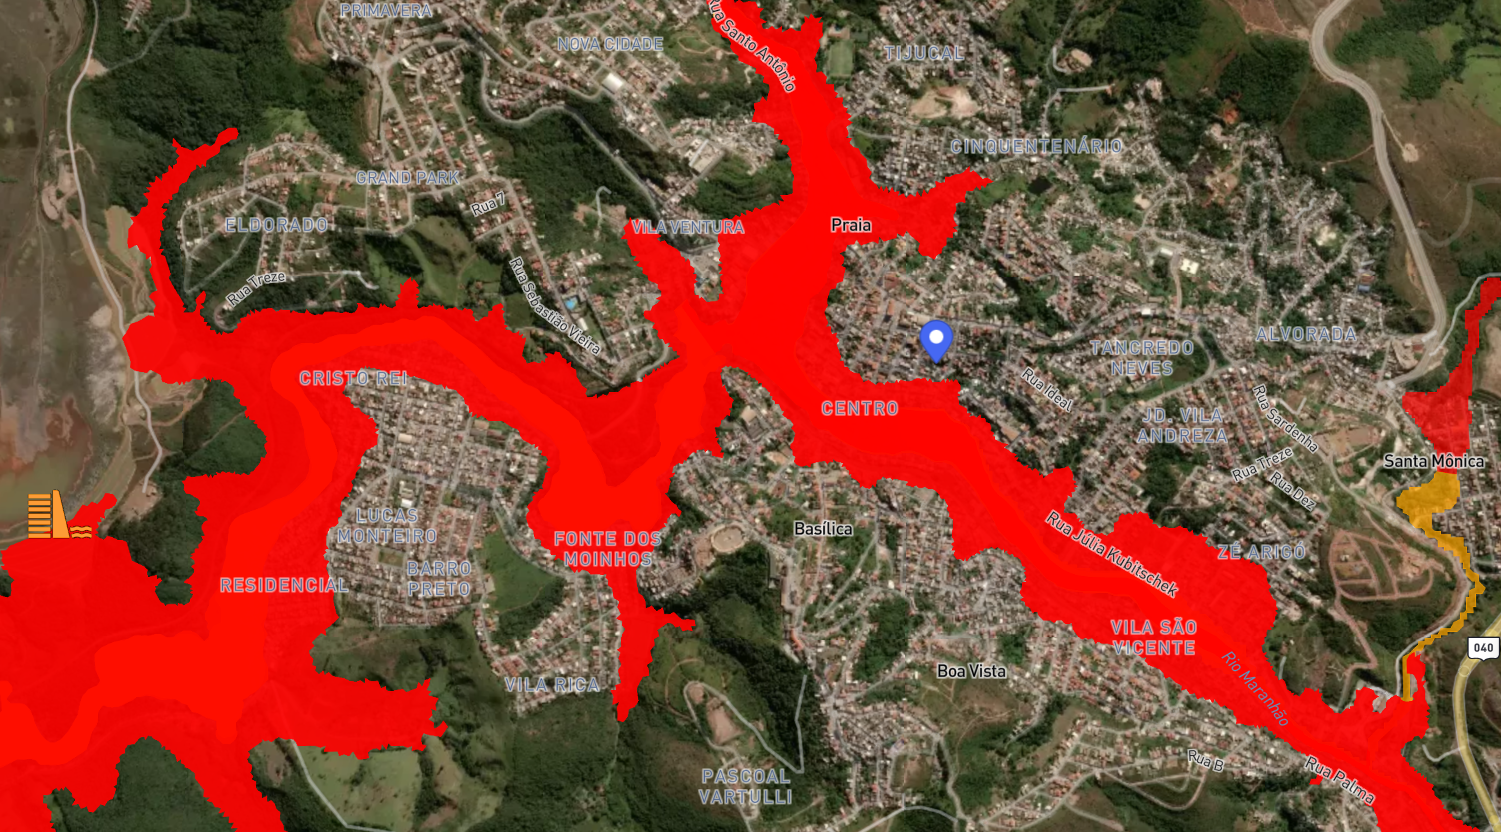 Congonhas e Jeceaba passam por simulado de emergência de barragens - Gerais  - Estado de Minas